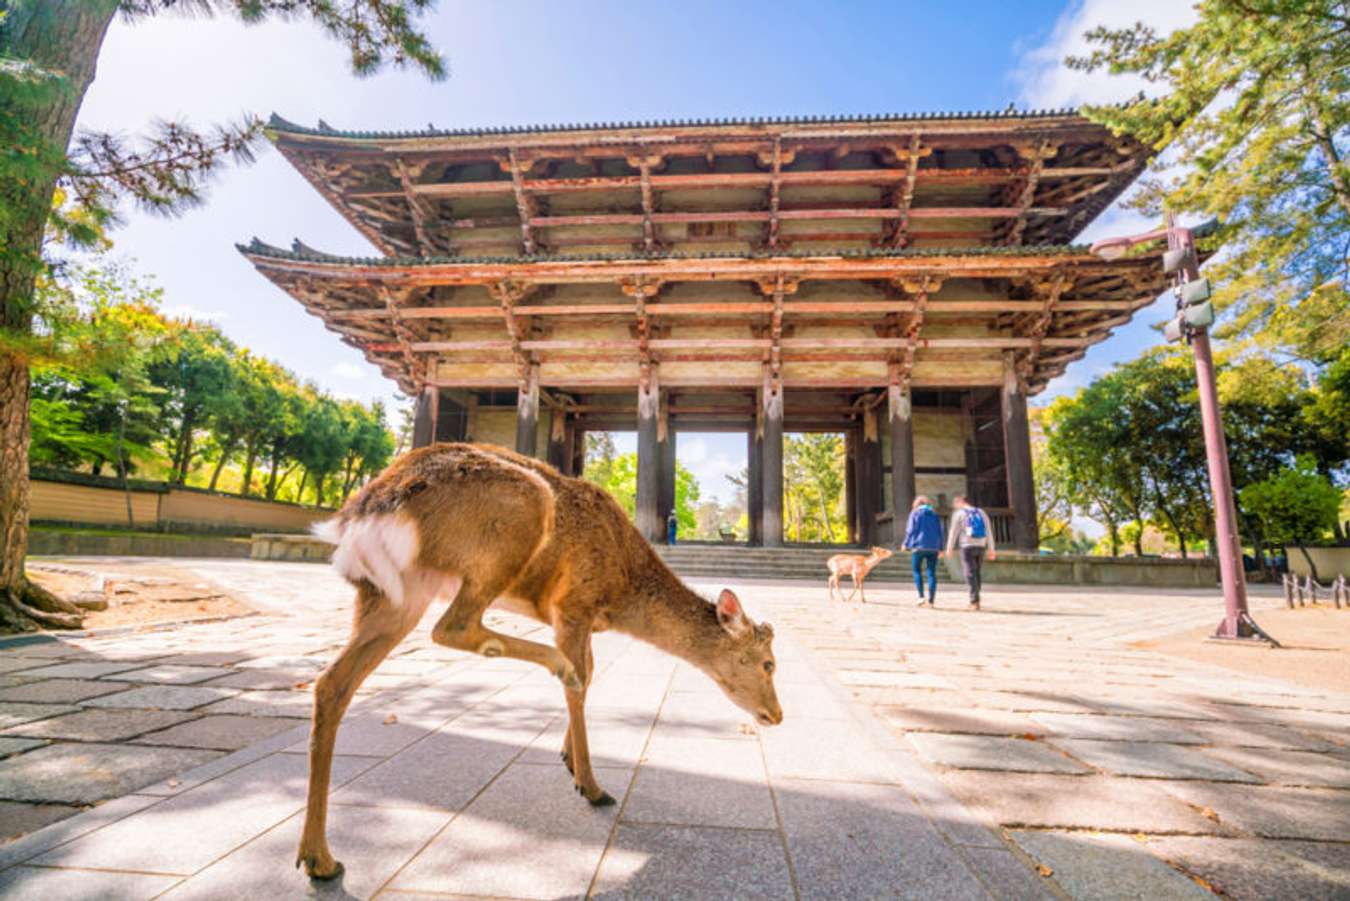 สวนกวางนารา (Nara Park) - เที่ยวญี่ปุ่น